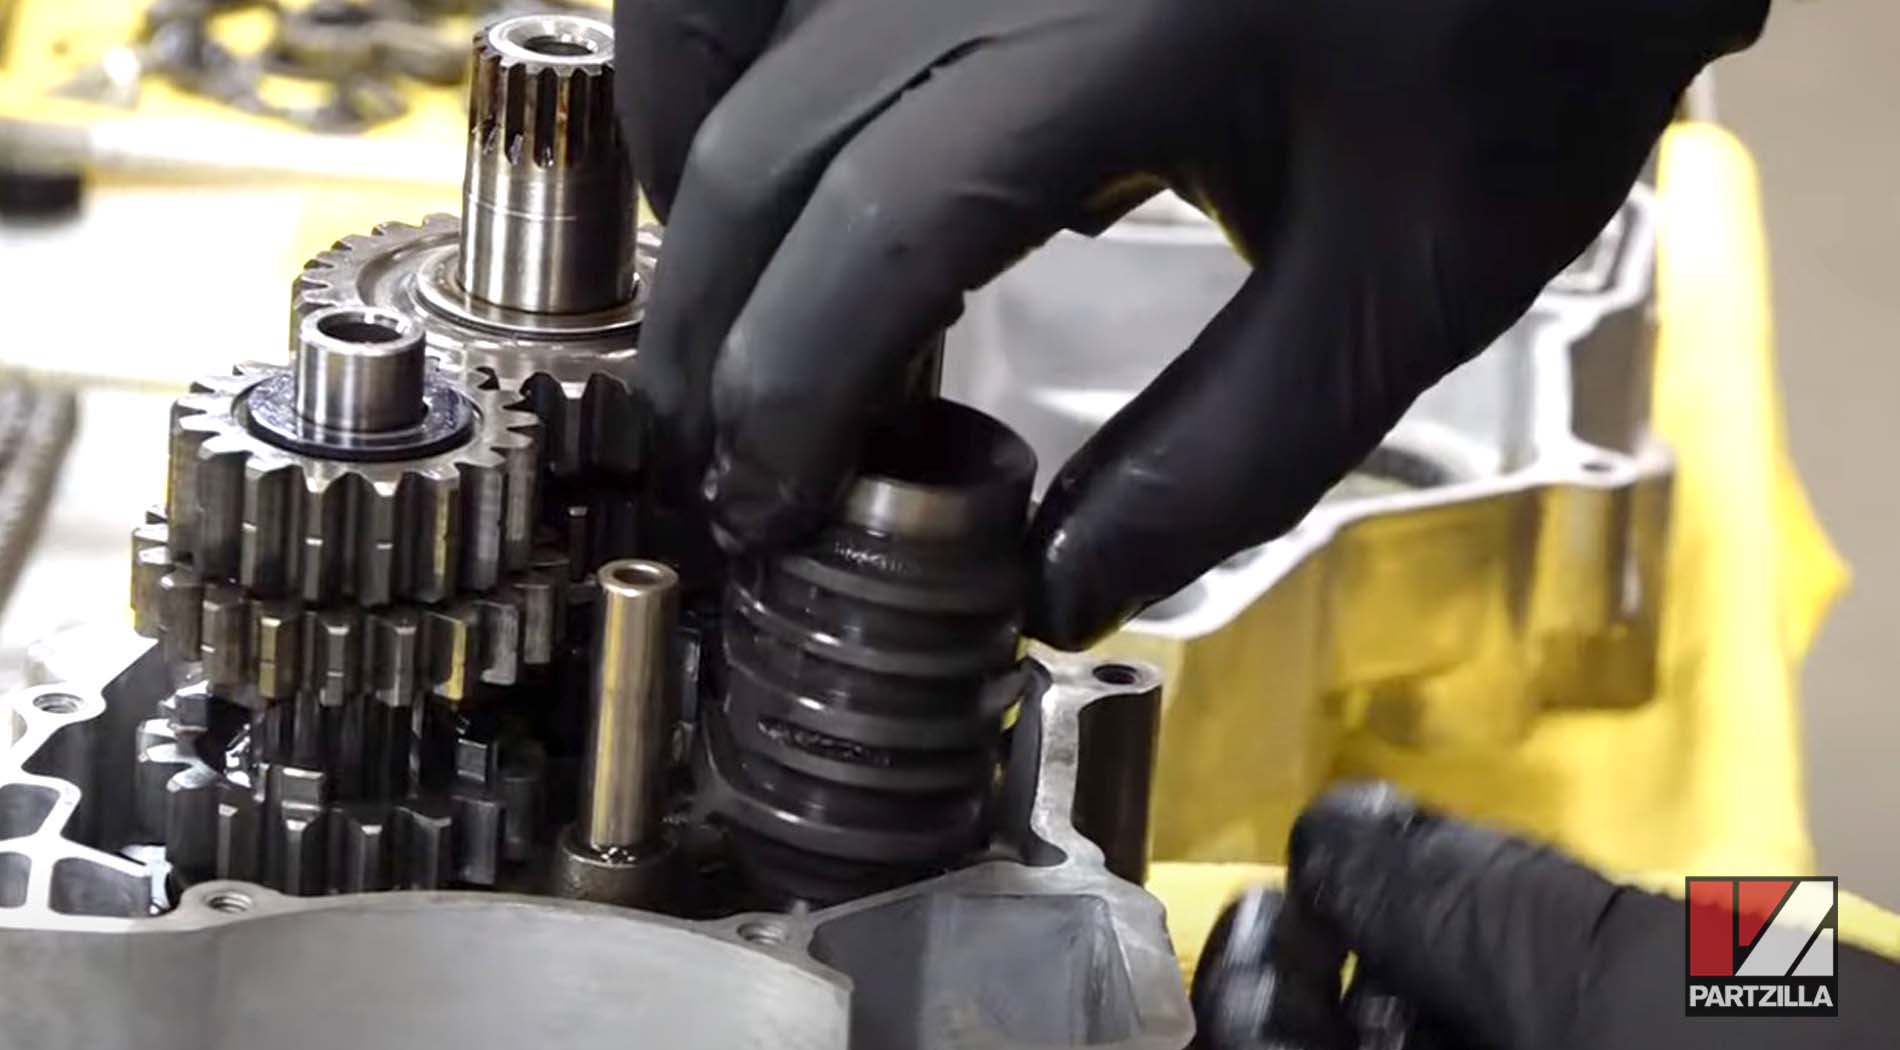 Honda CRF450 transmission gear shift drum installation